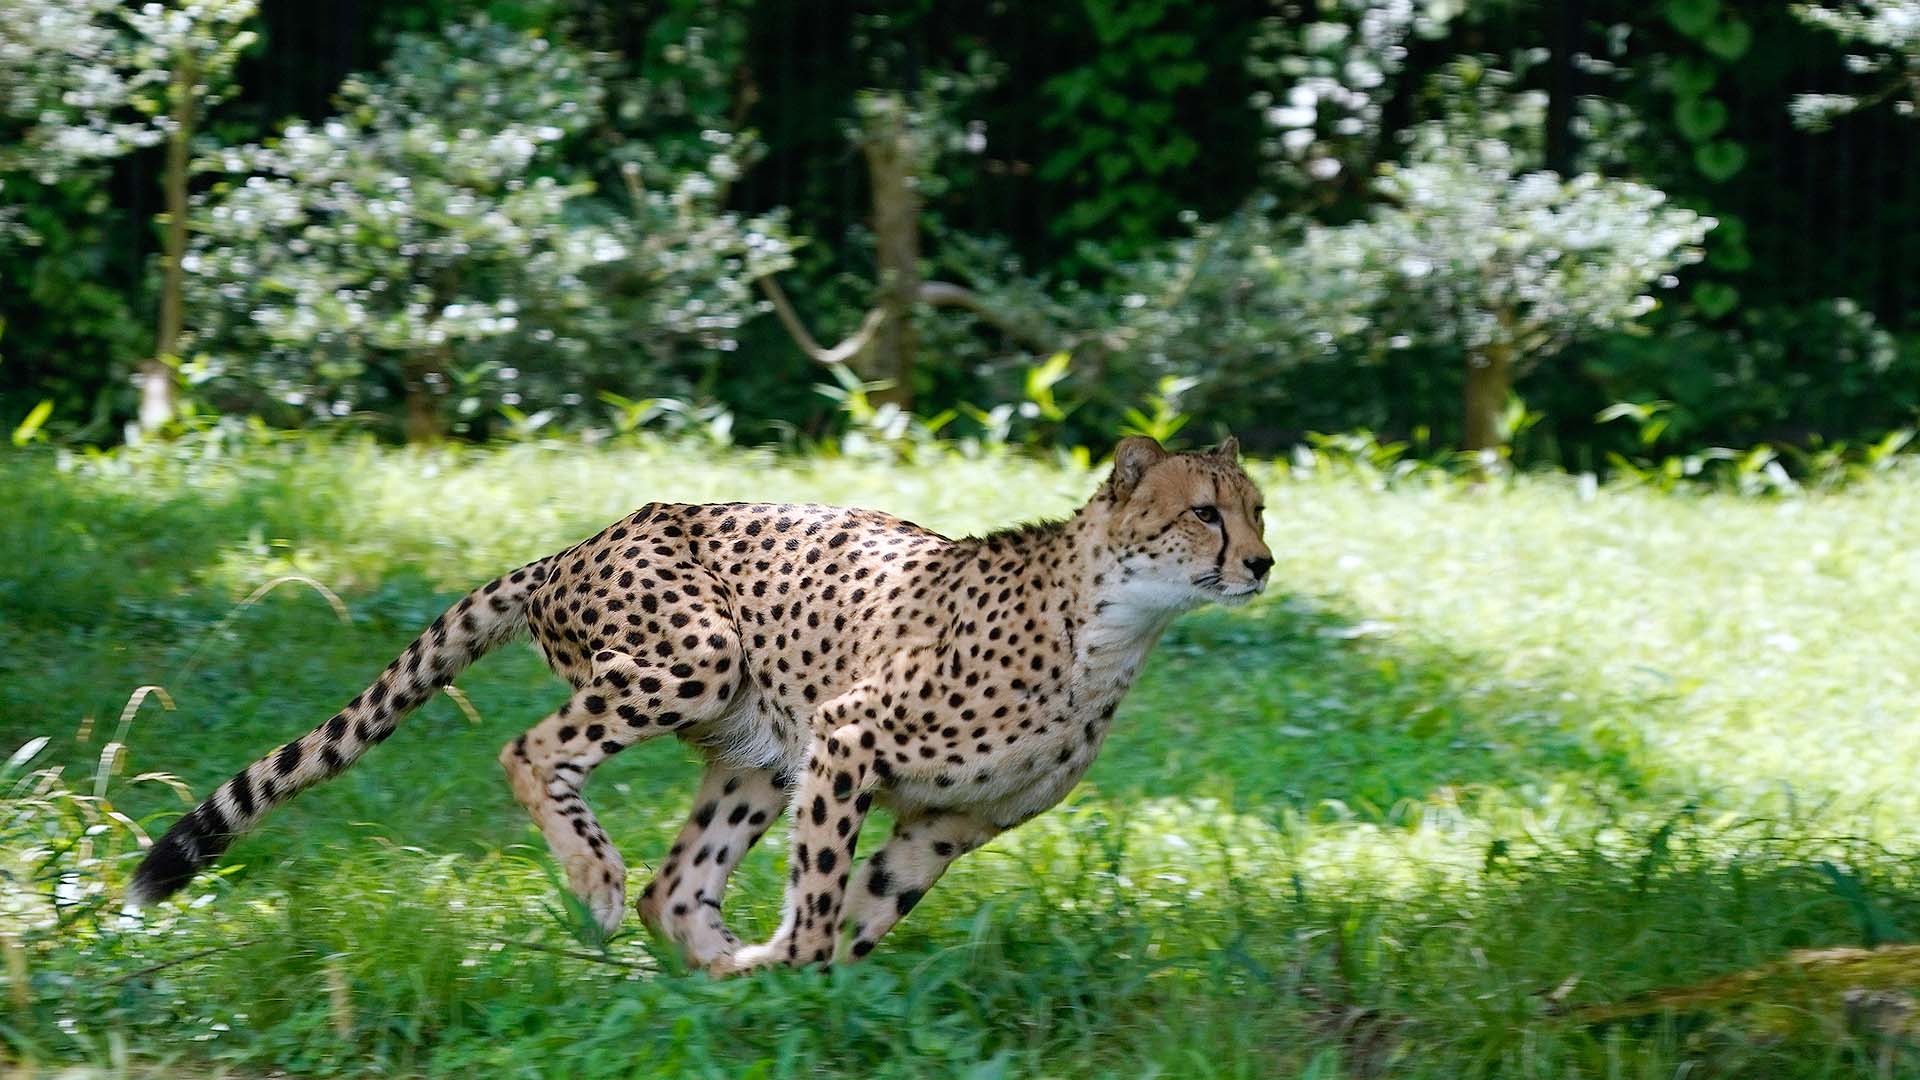 トラなお チーターが走る姿は やっぱカッコイイ 多摩動物公園 チーター Cheetah T Co 8meawjrzae Twitter